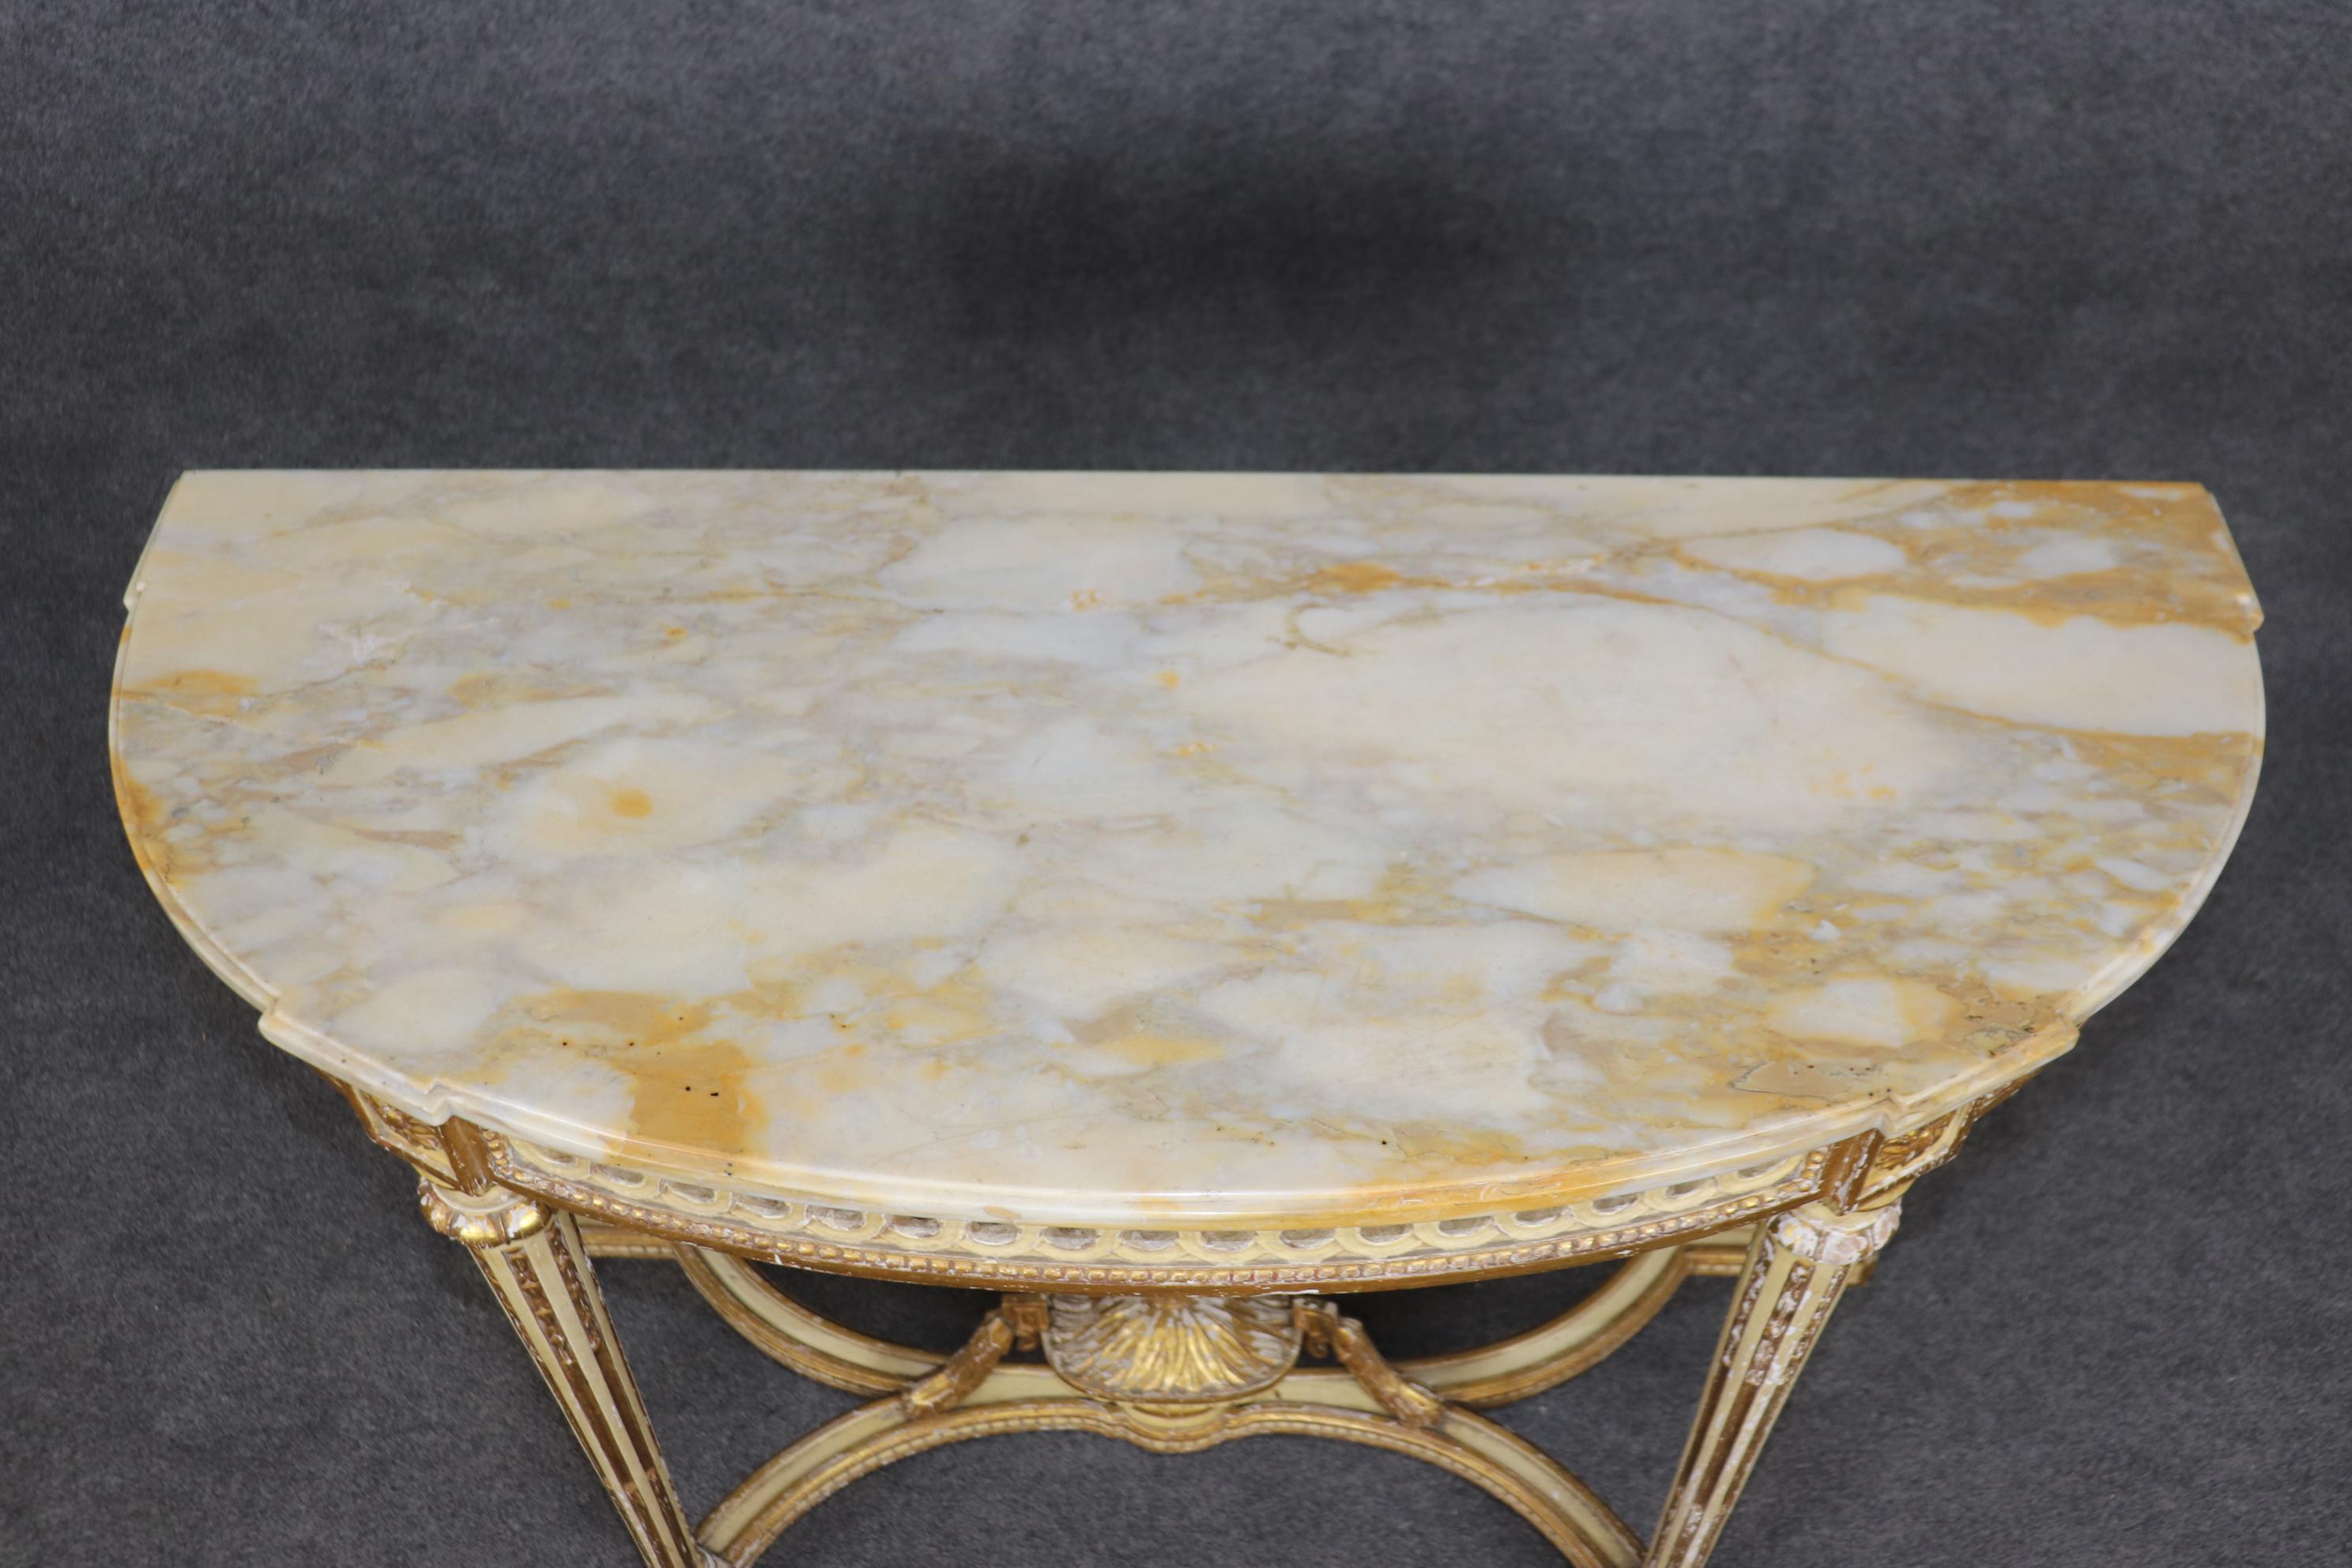 Dies ist ein klassischer und atemberaubender, aus der Zeit gefallener, vergoldeter und bemalter Konsolen- oder Demilunentisch mit einer feinen Marmorplatte. Der Tisch befindet sich in seinem Originalzustand und ist als gut erhalten zu bezeichnen.